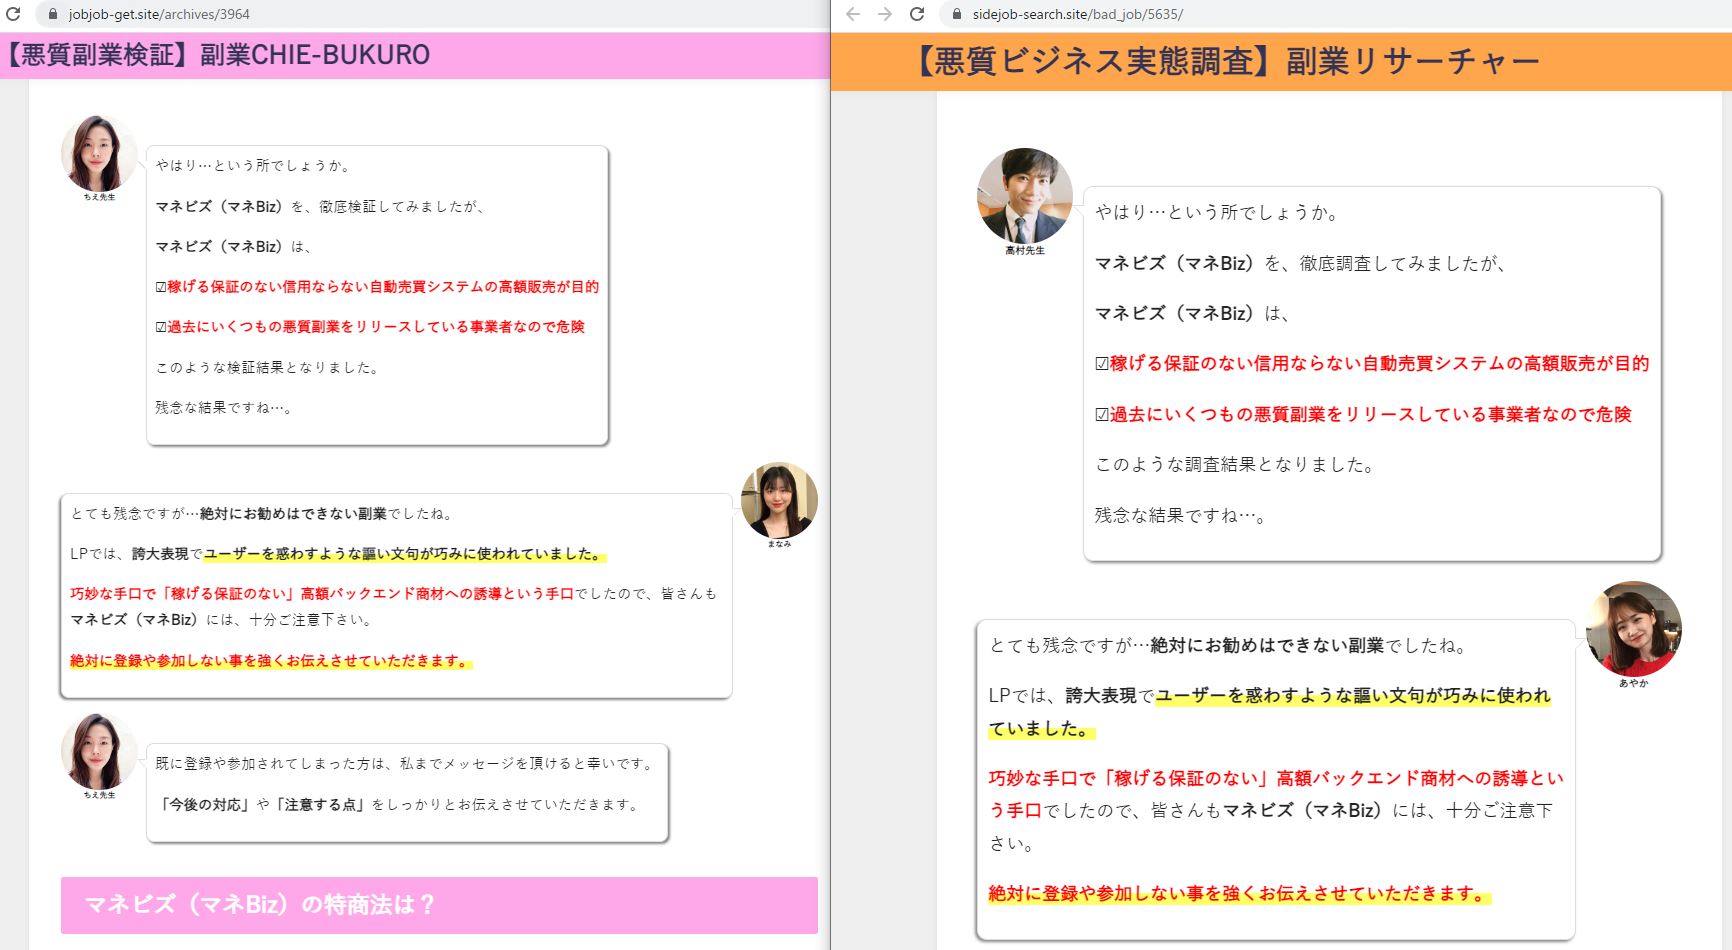 ちえ先生と高村先生のブログ比較